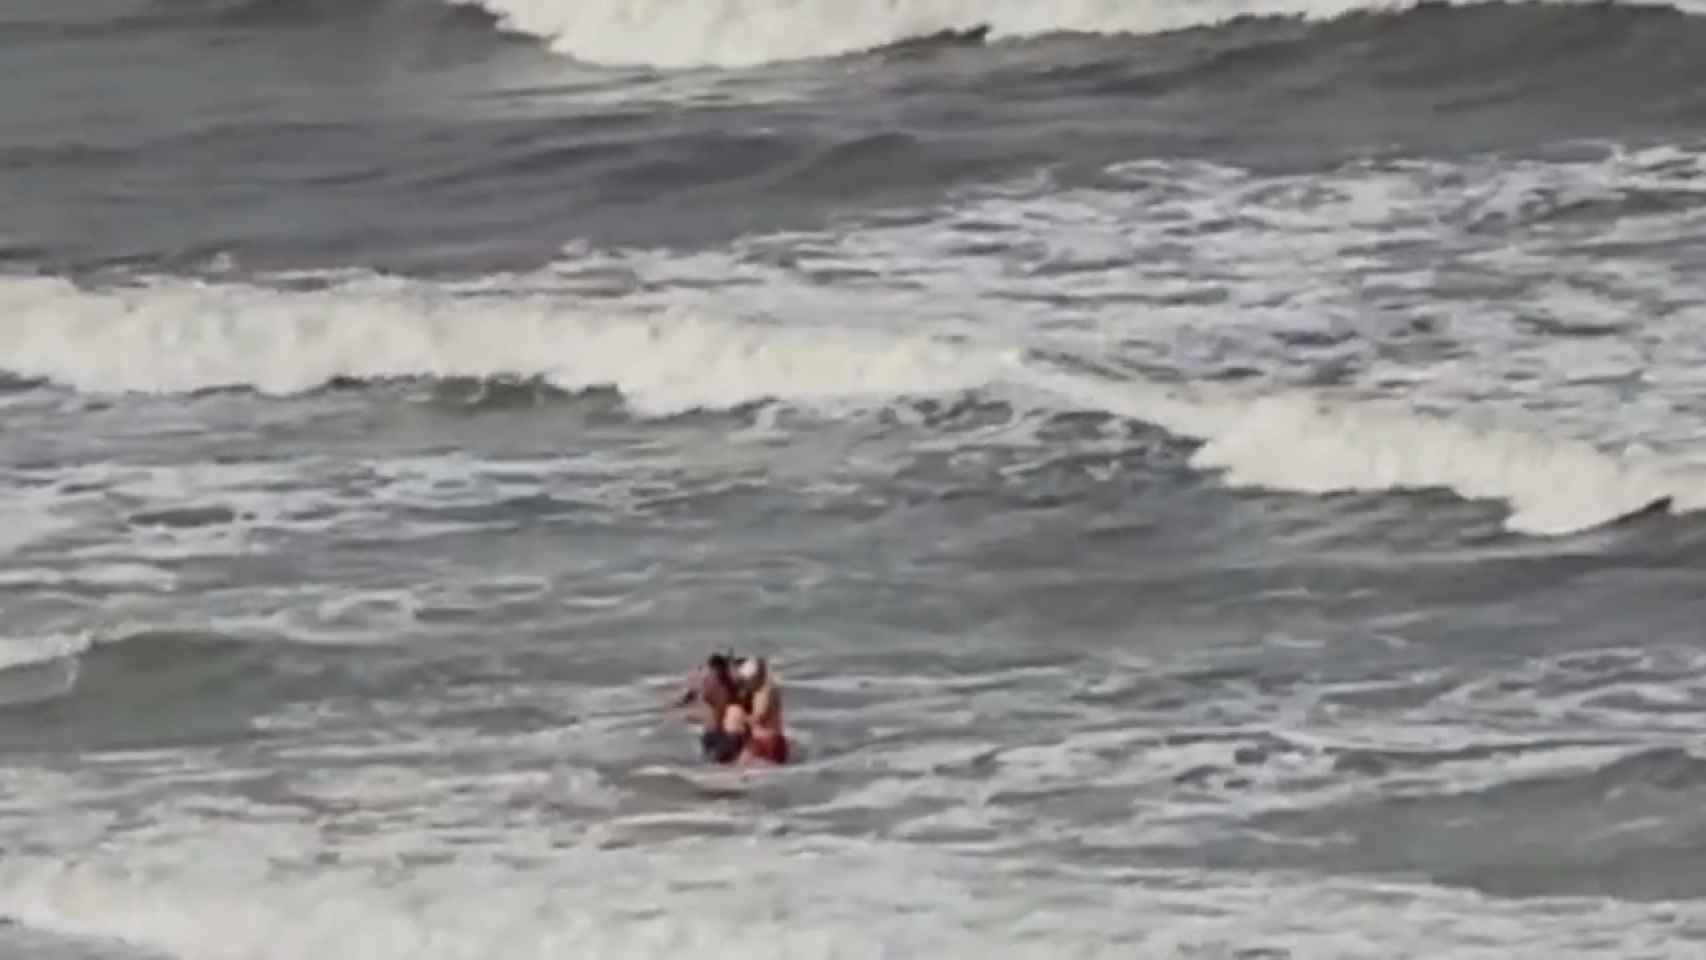 Un Cabo del Consorcio interviene en el rescate de una persona en la playa de Arenales del Sol.